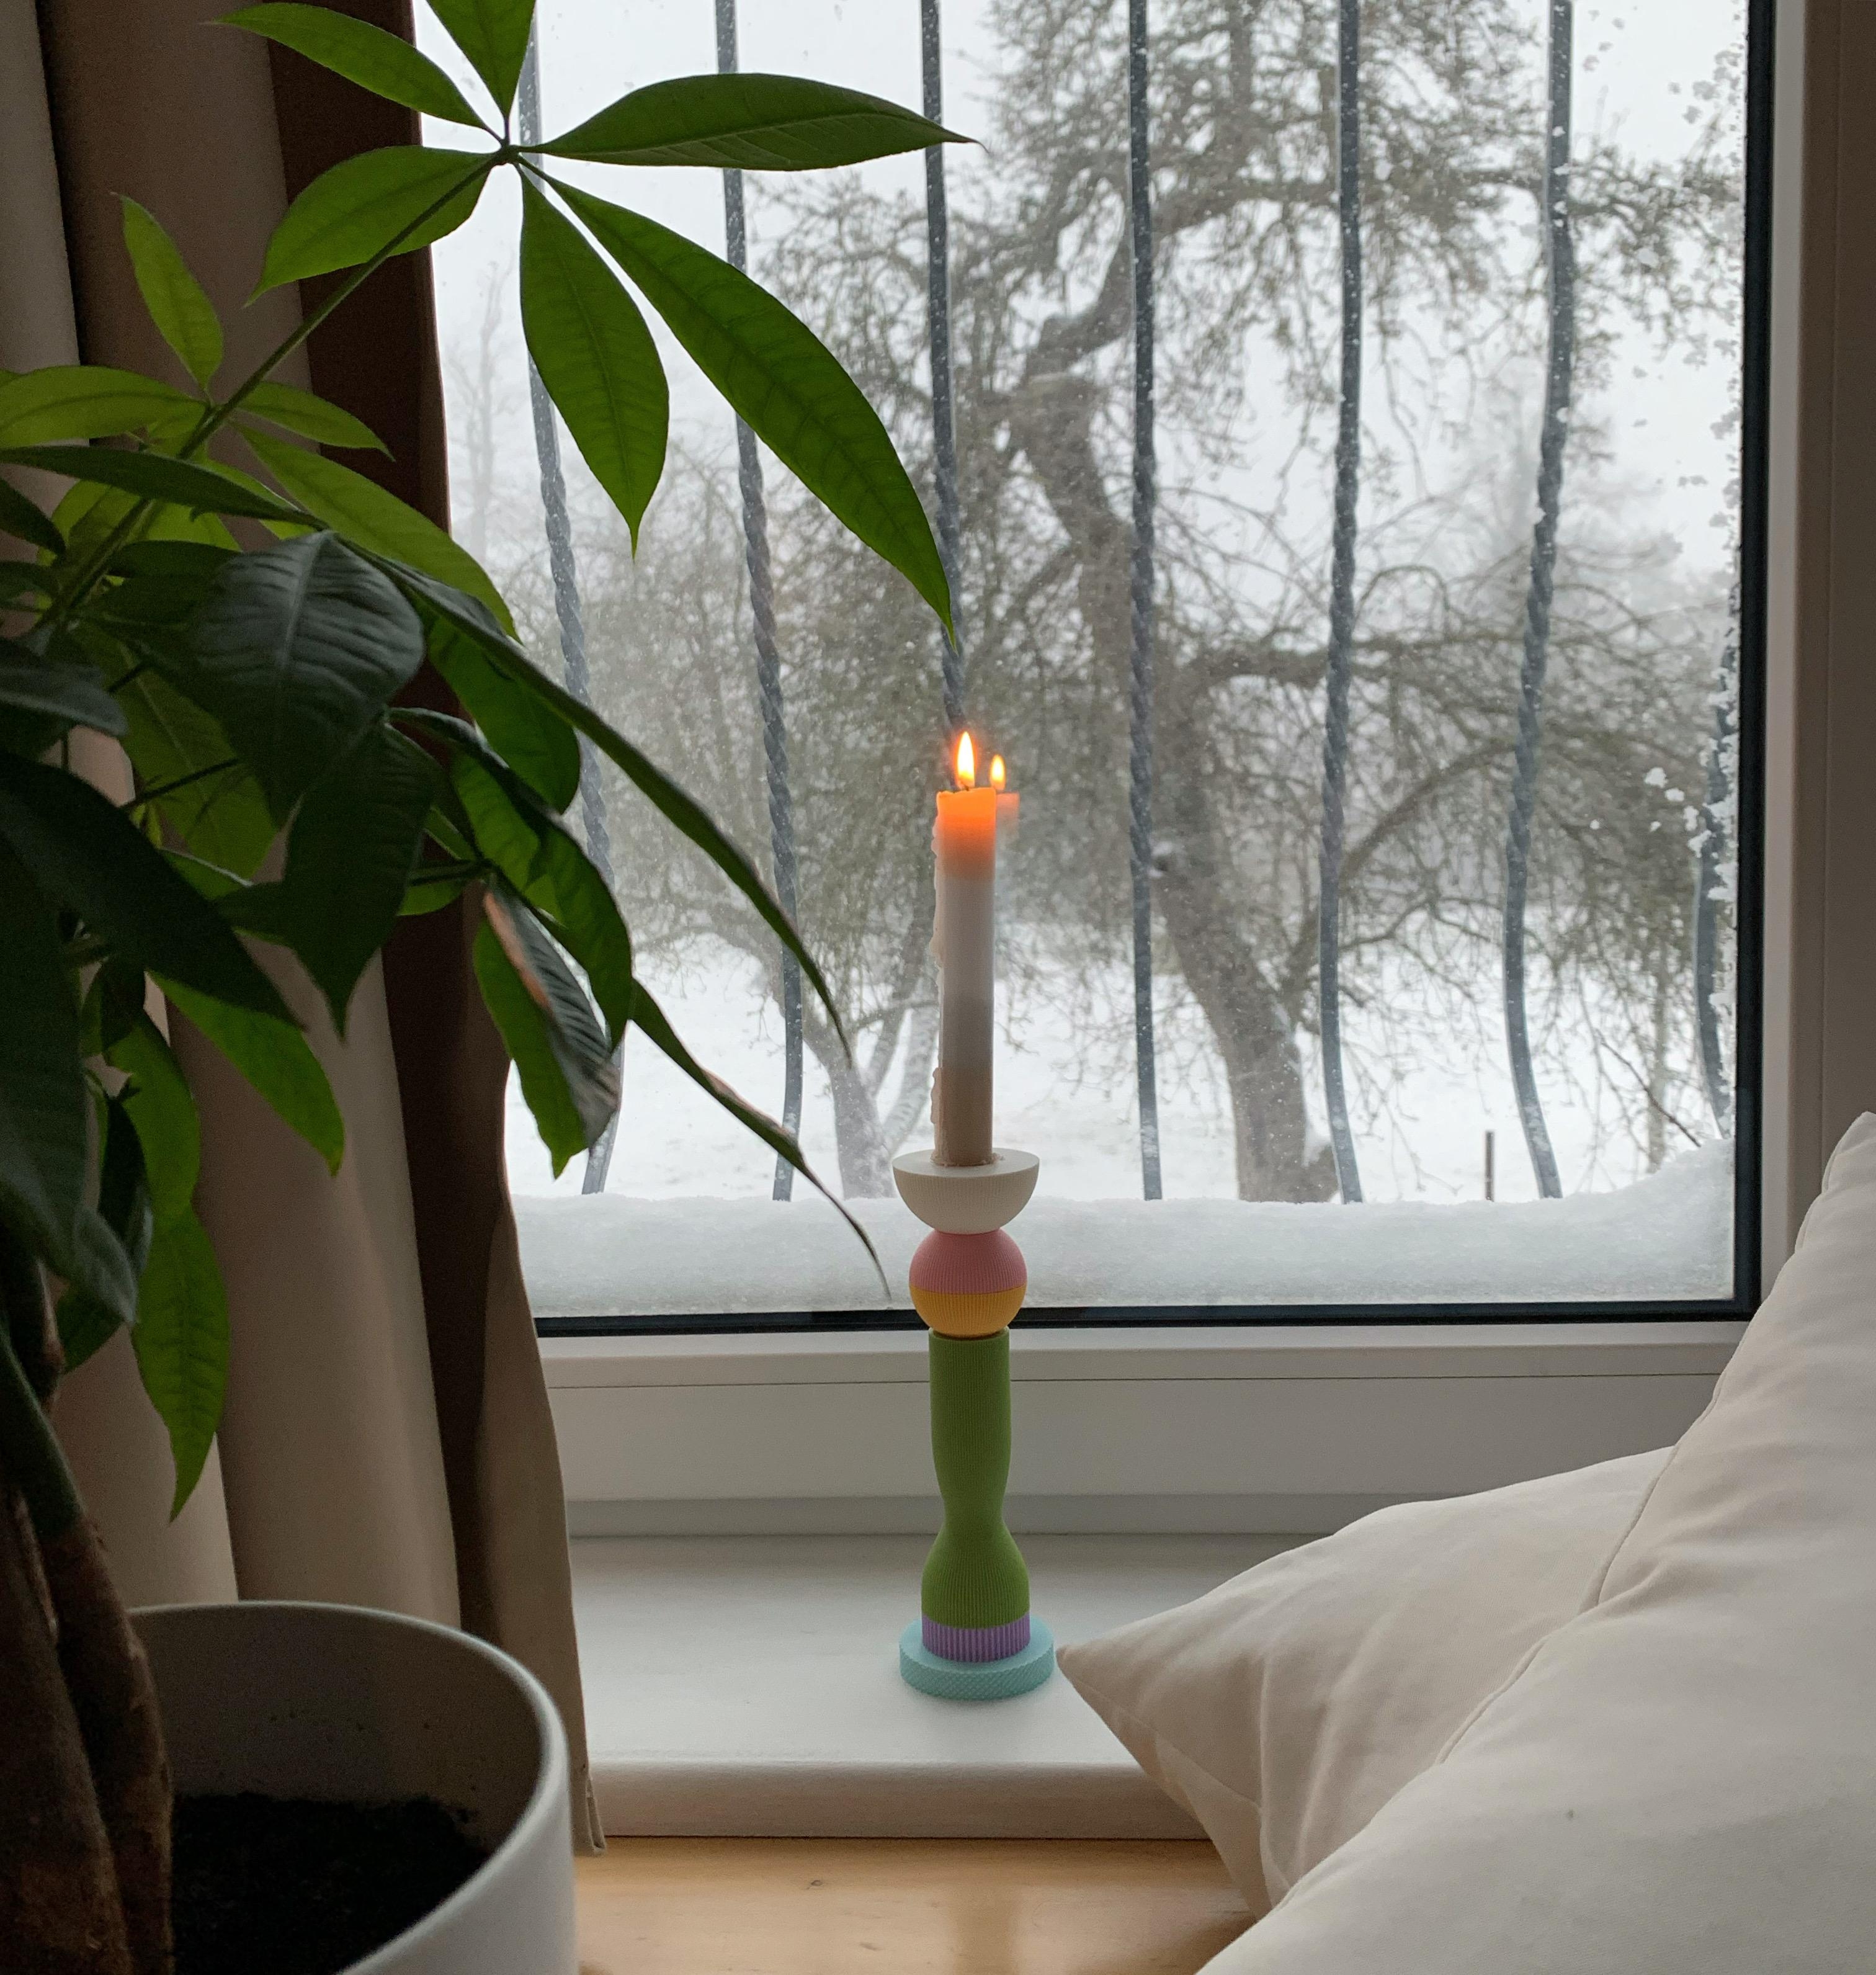 #winter #fensterblick #home #zuhause #einfachmella #kerzenschein 